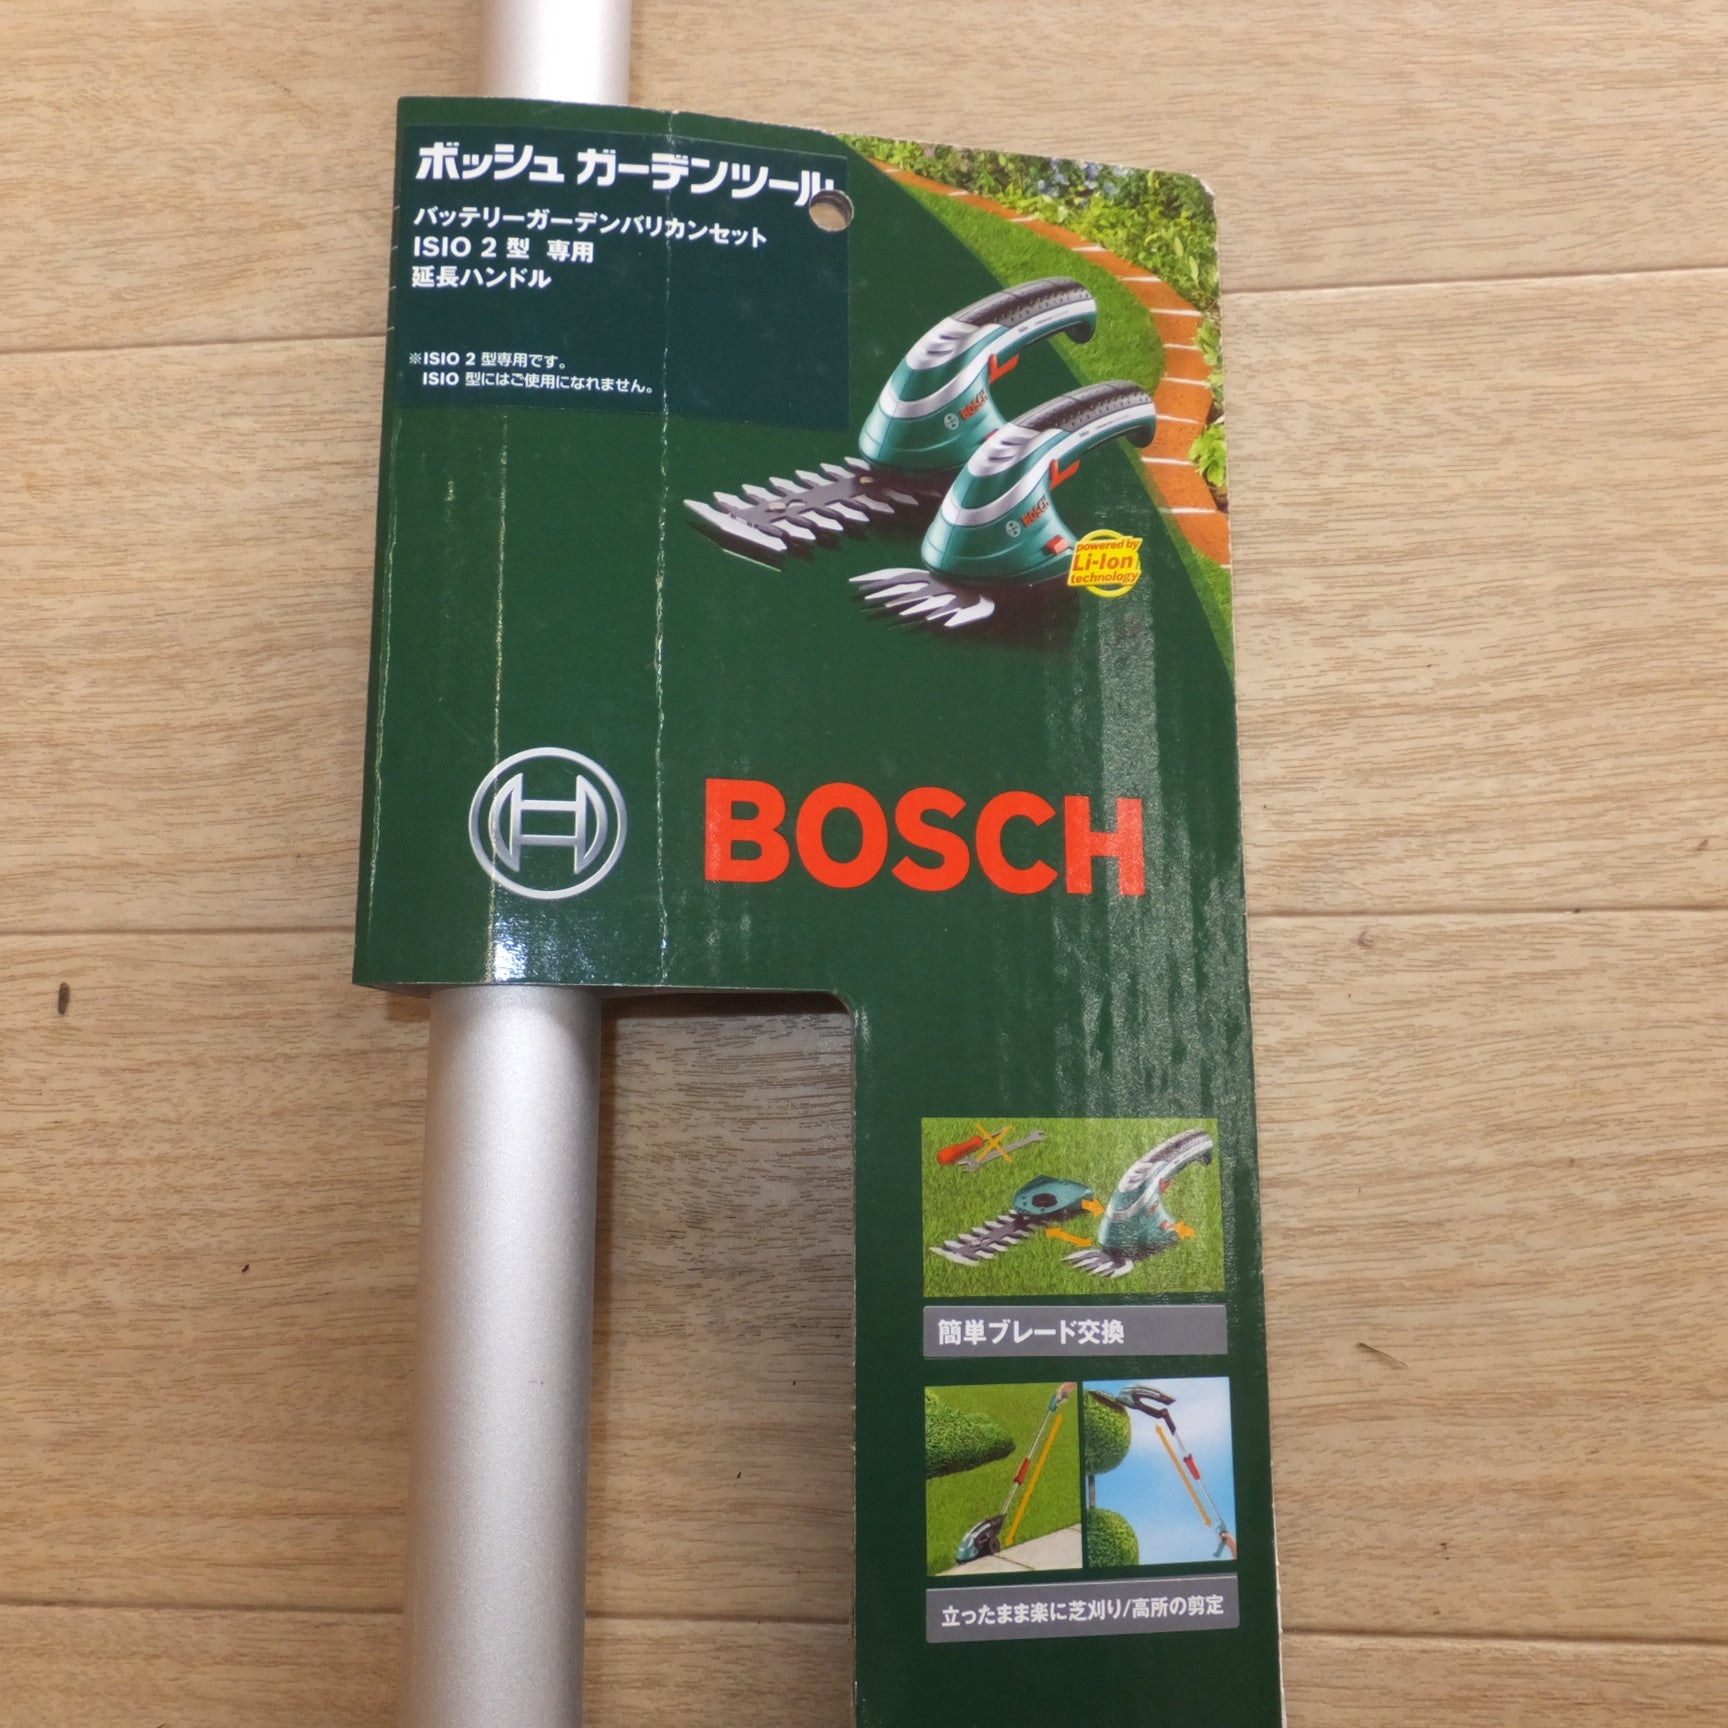 ボッシュ Bosch Isio バッテリーガーデンバリカンセット 芝刈 - その他